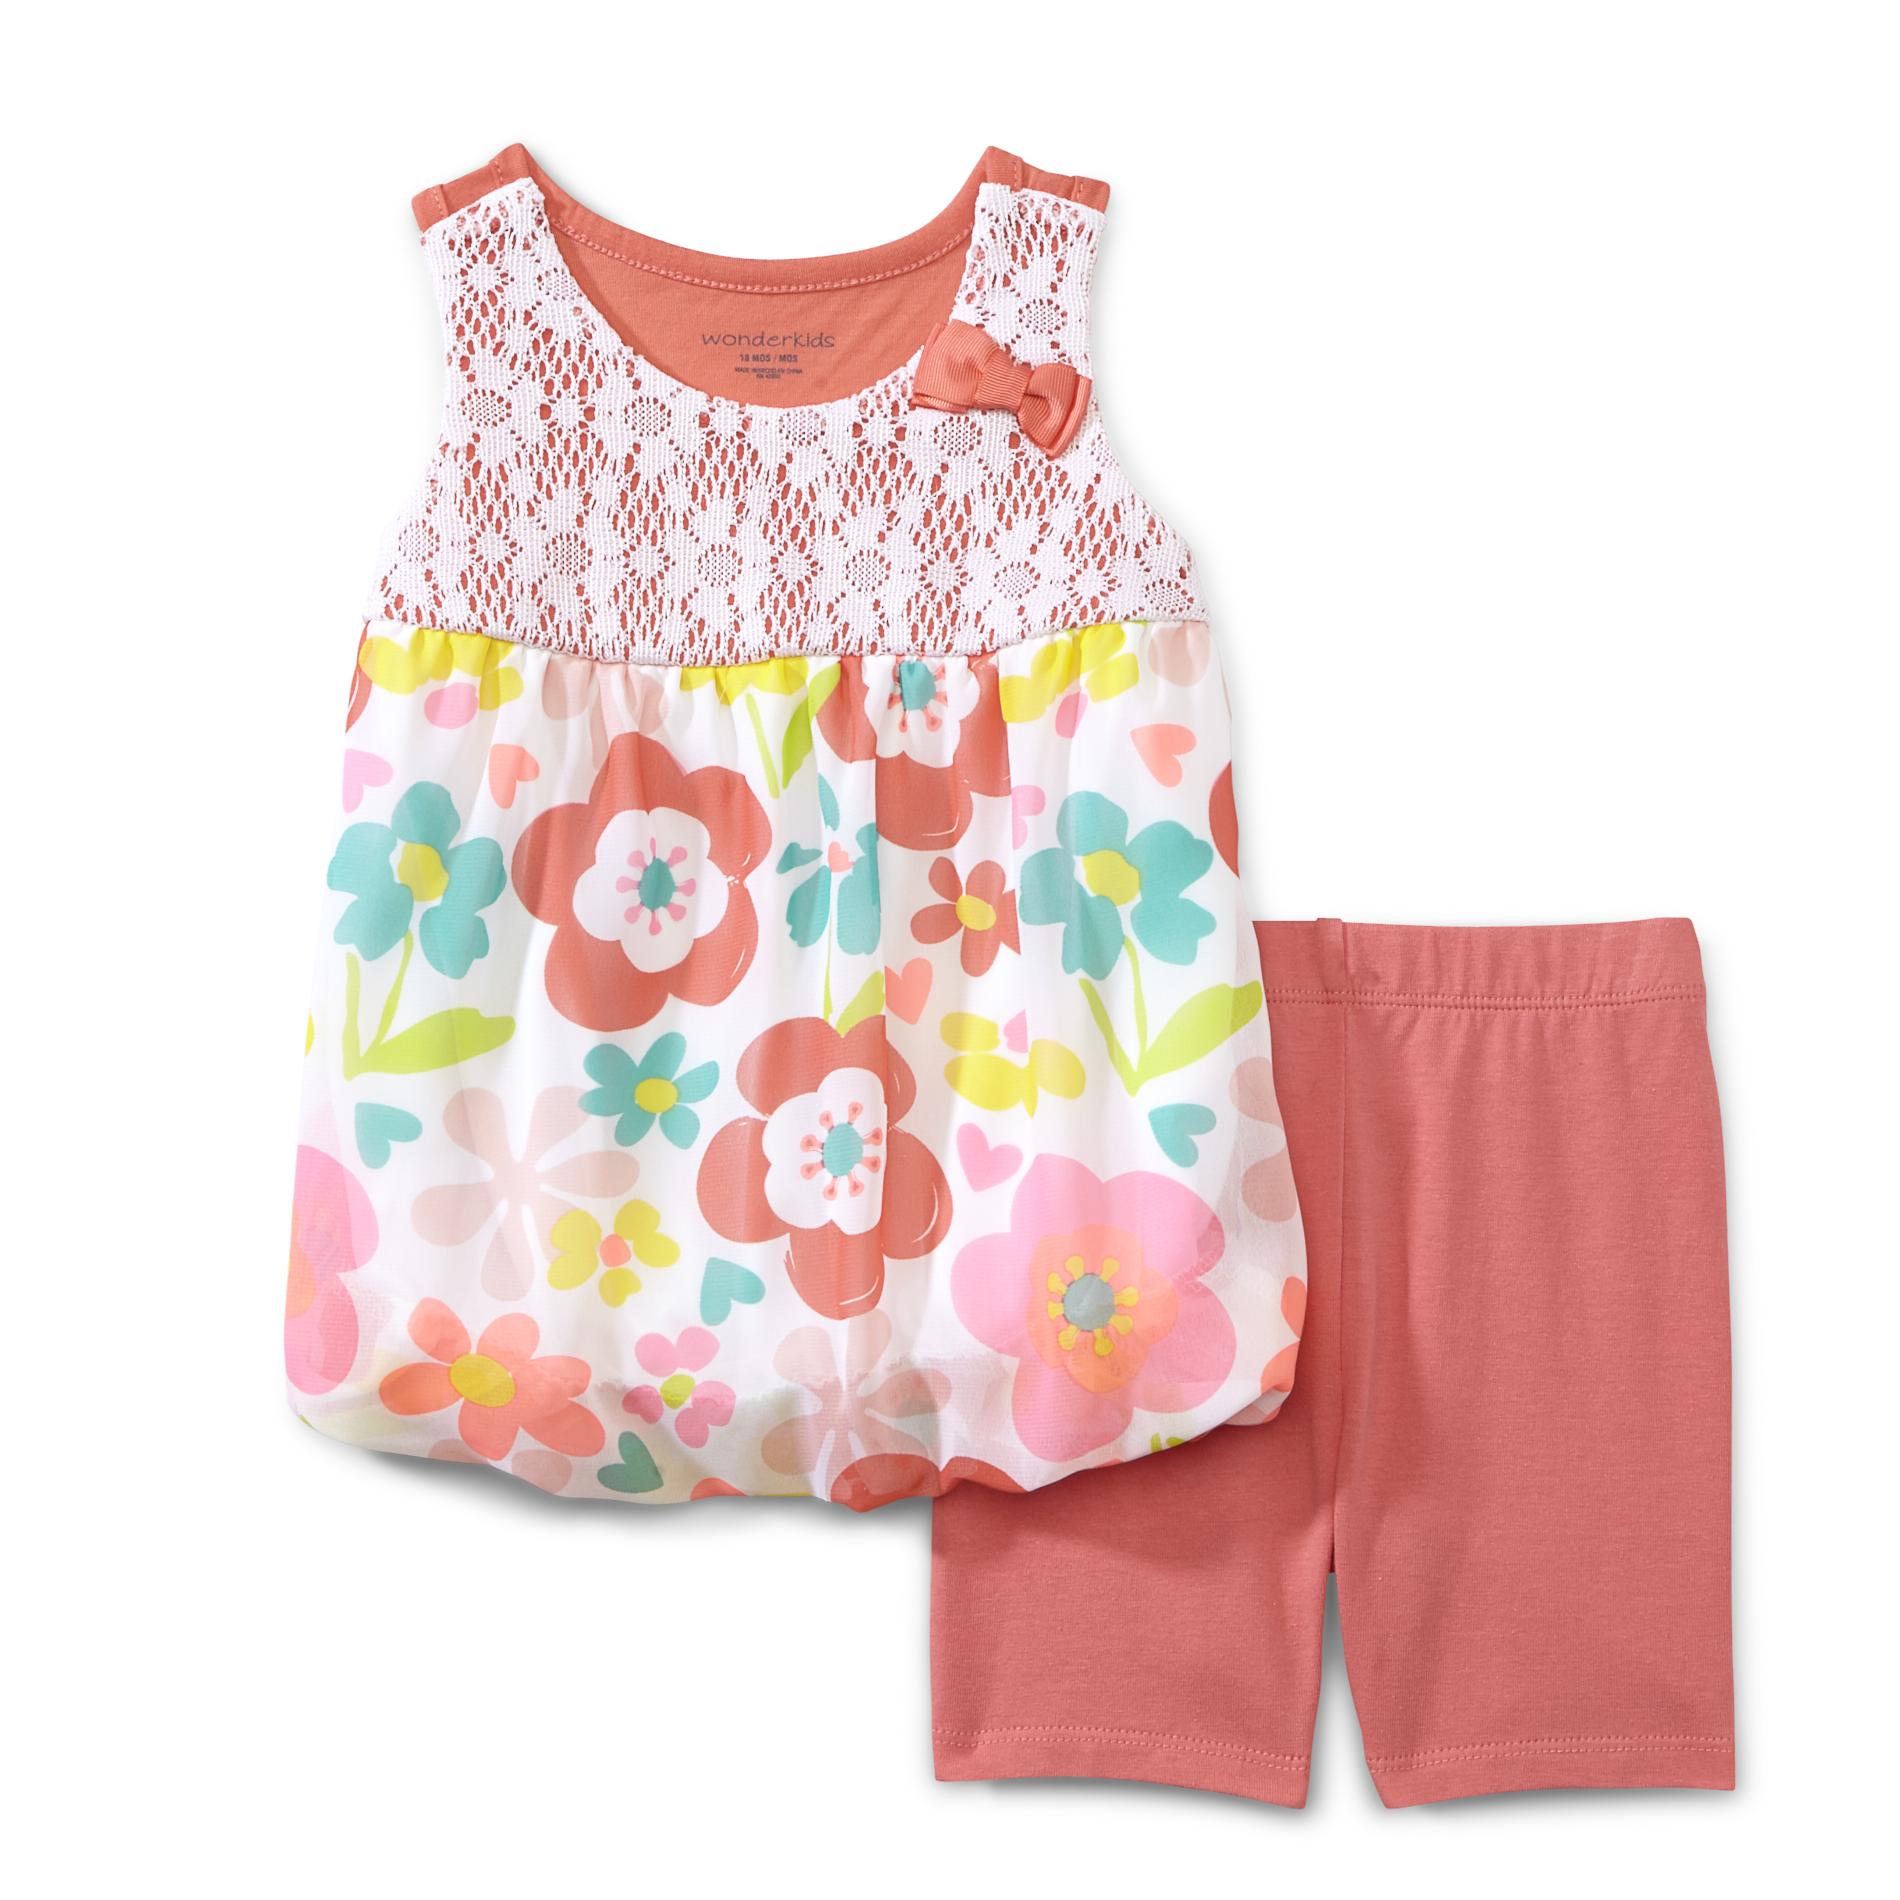 WonderKids Infant & Toddler Girl's Top & Shorts - Floral